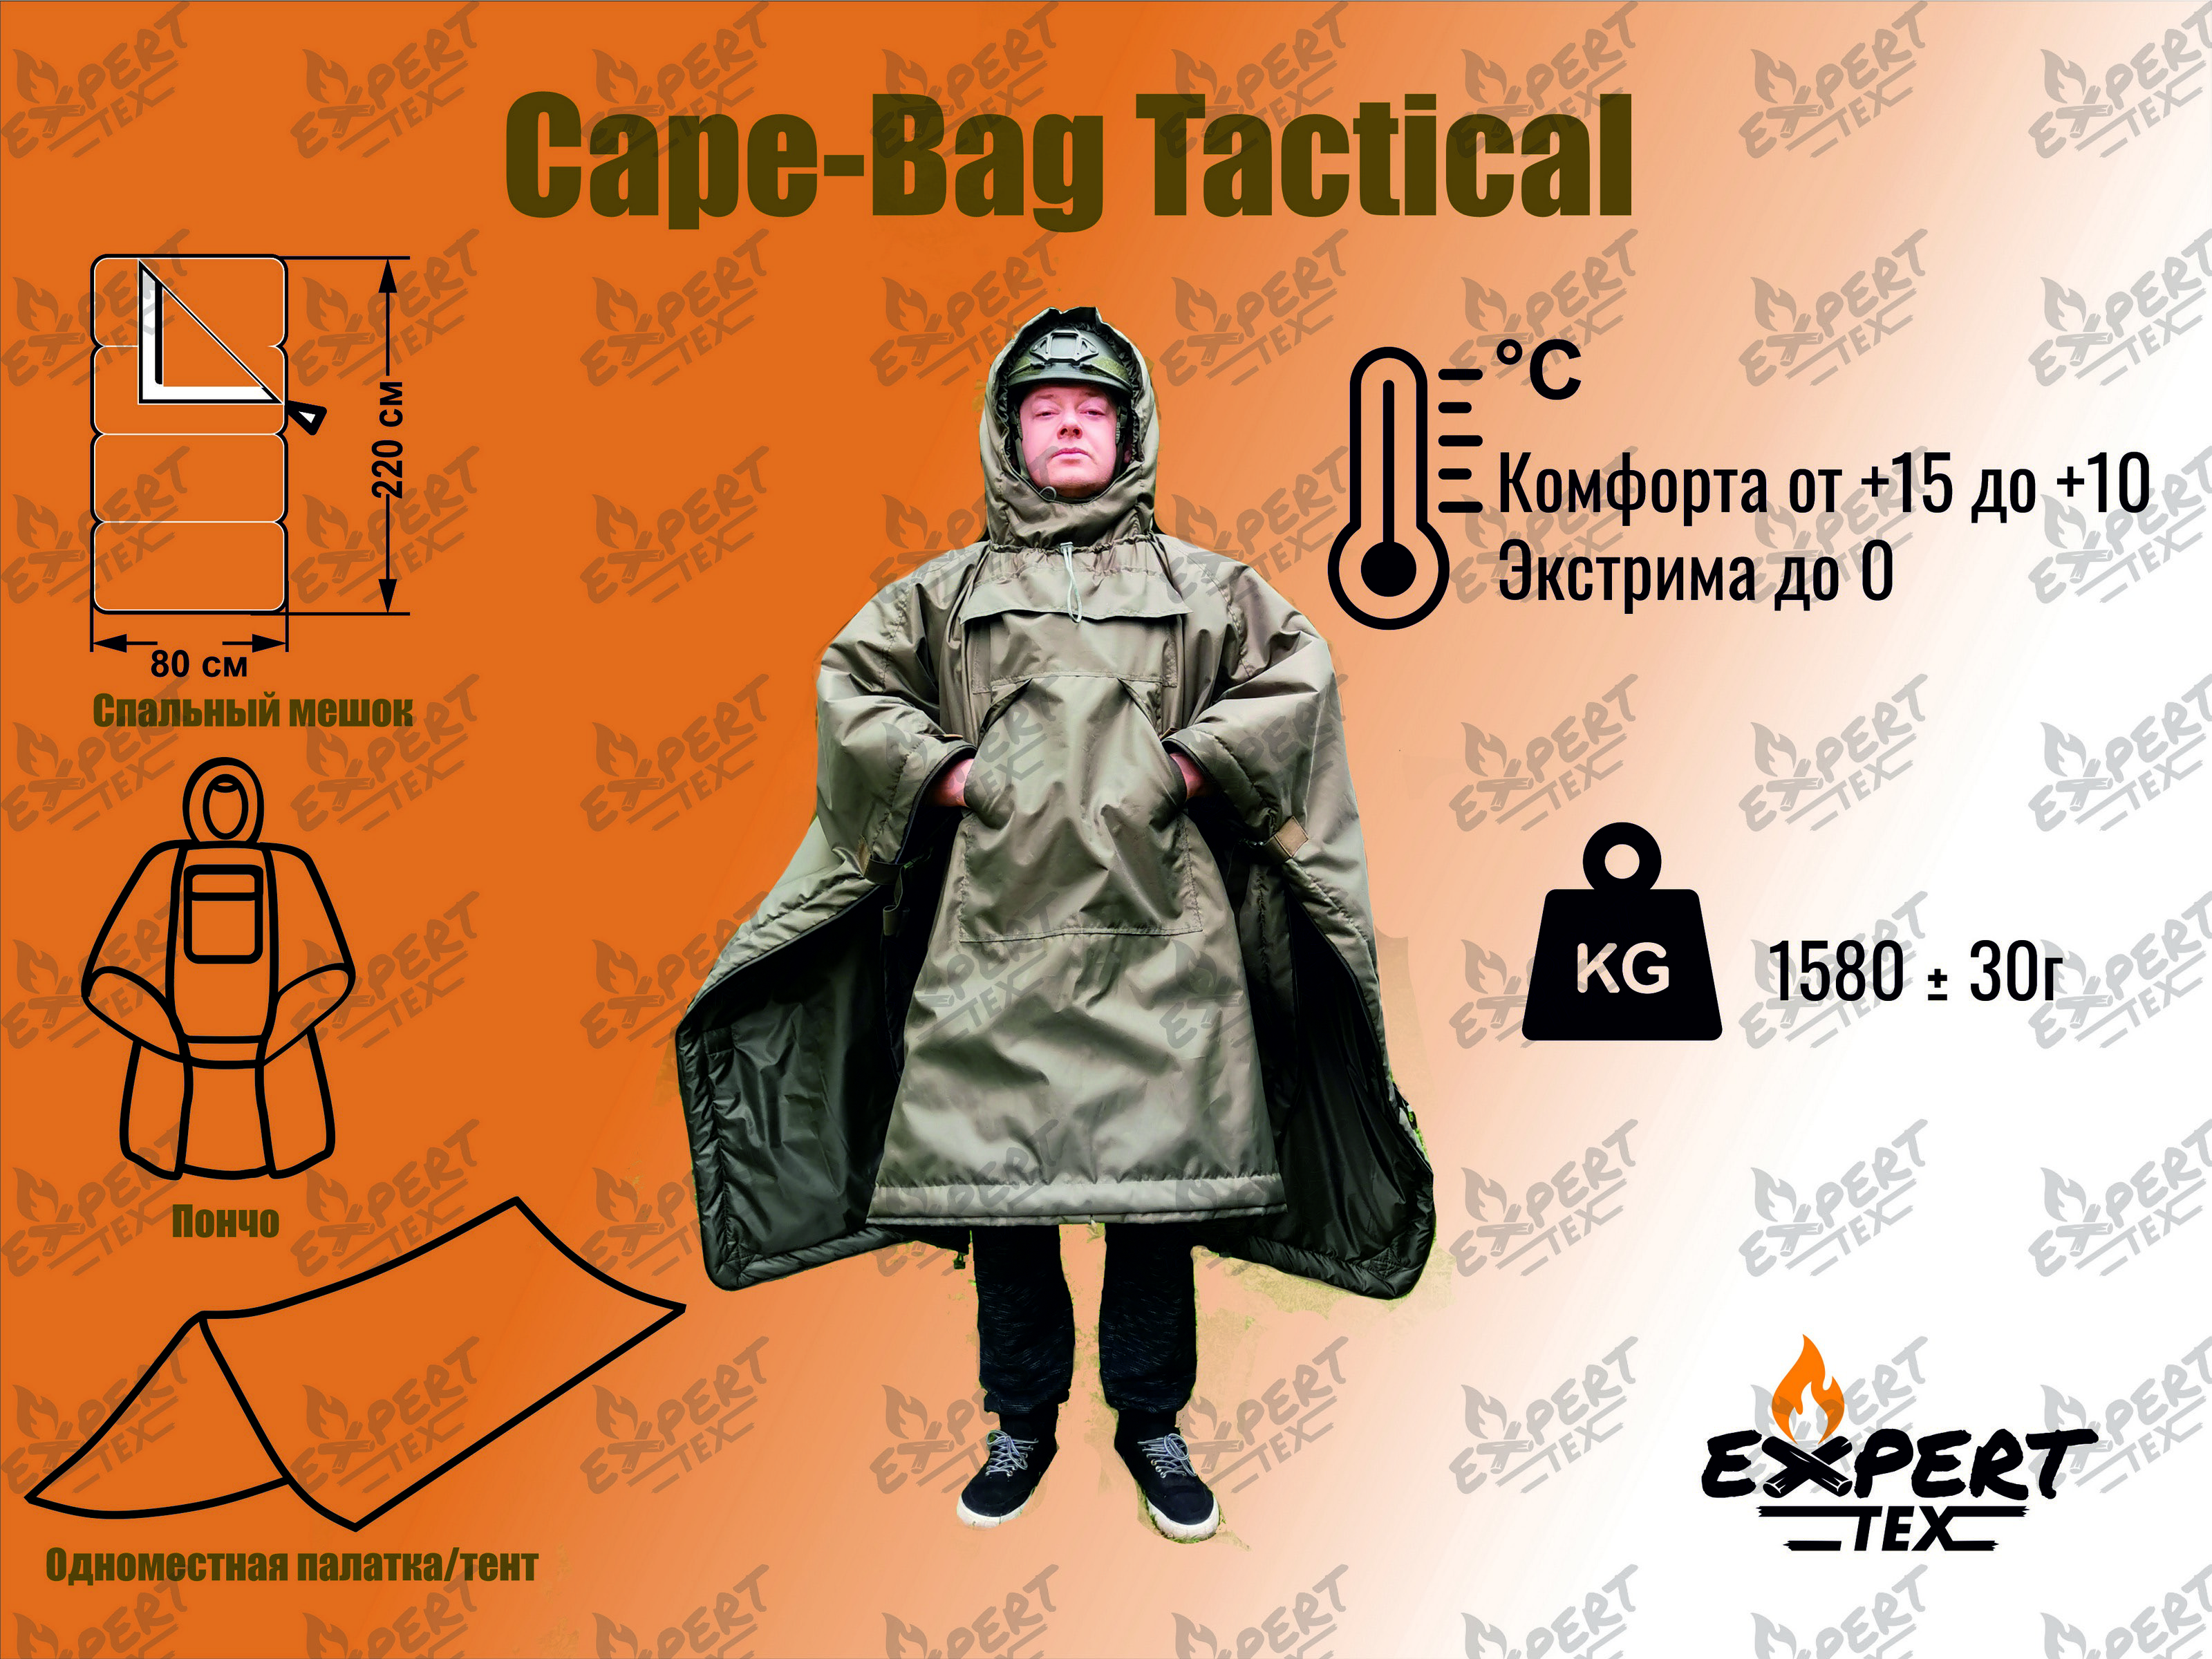 Спальный мешок EXPERT TEX Мод.CAPE-BAG